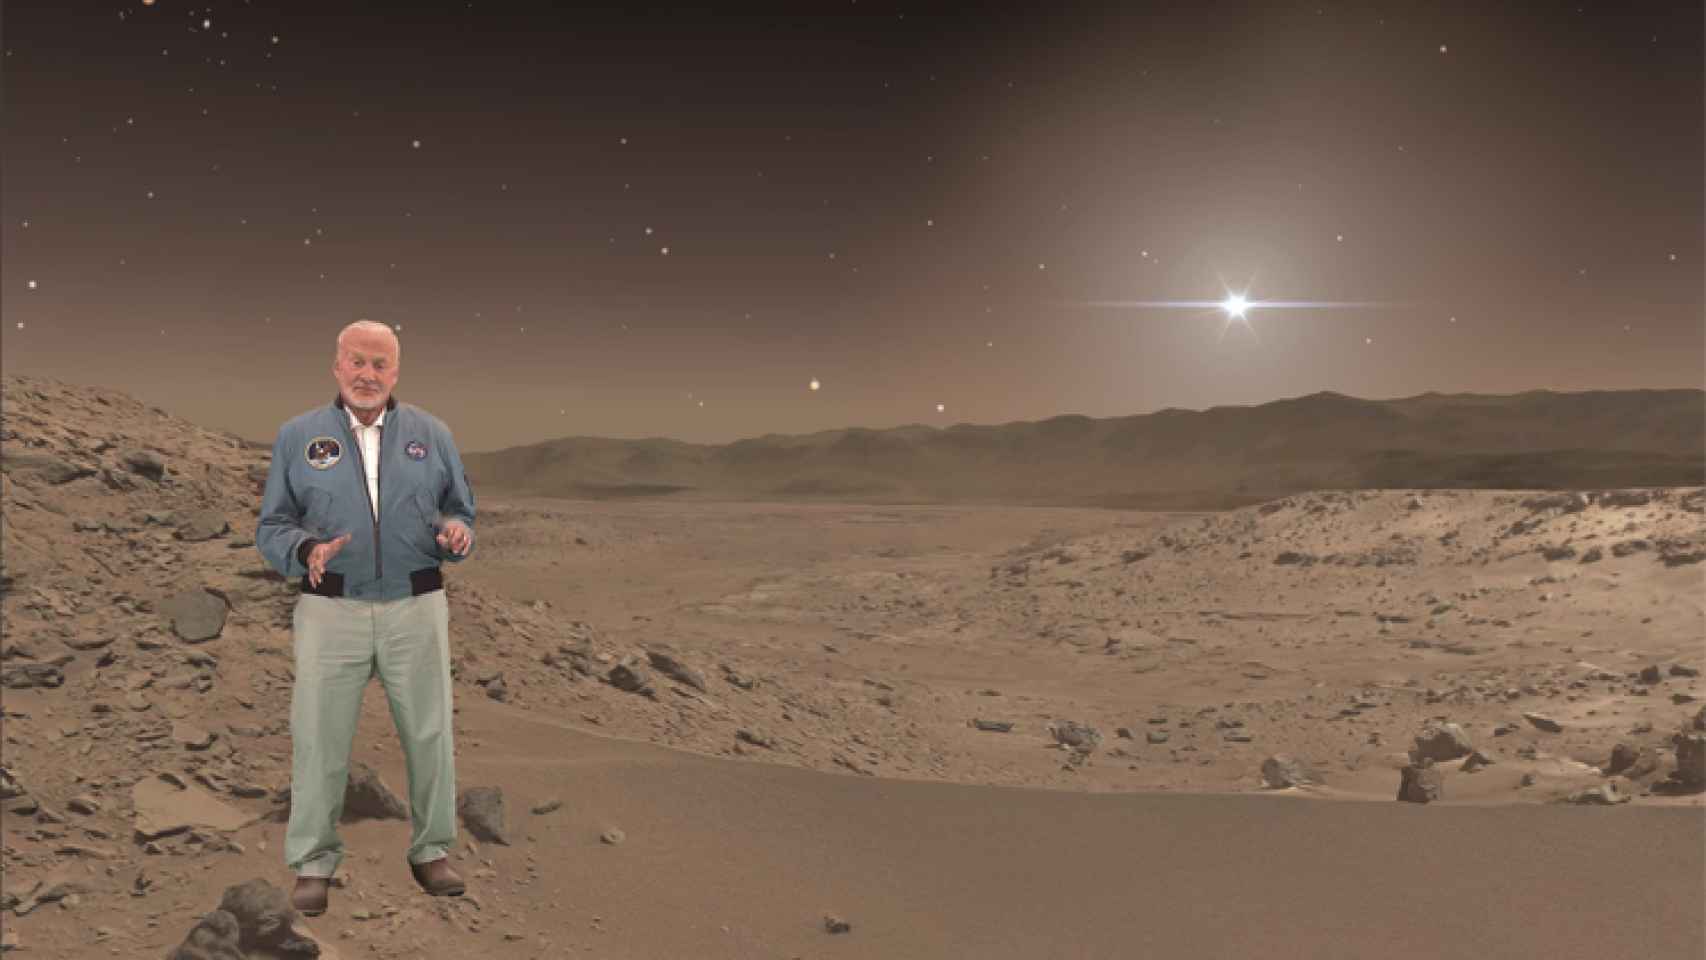 El célebre astronauta Buzz Aldrin acompañará al visitante por la superficie marciana.